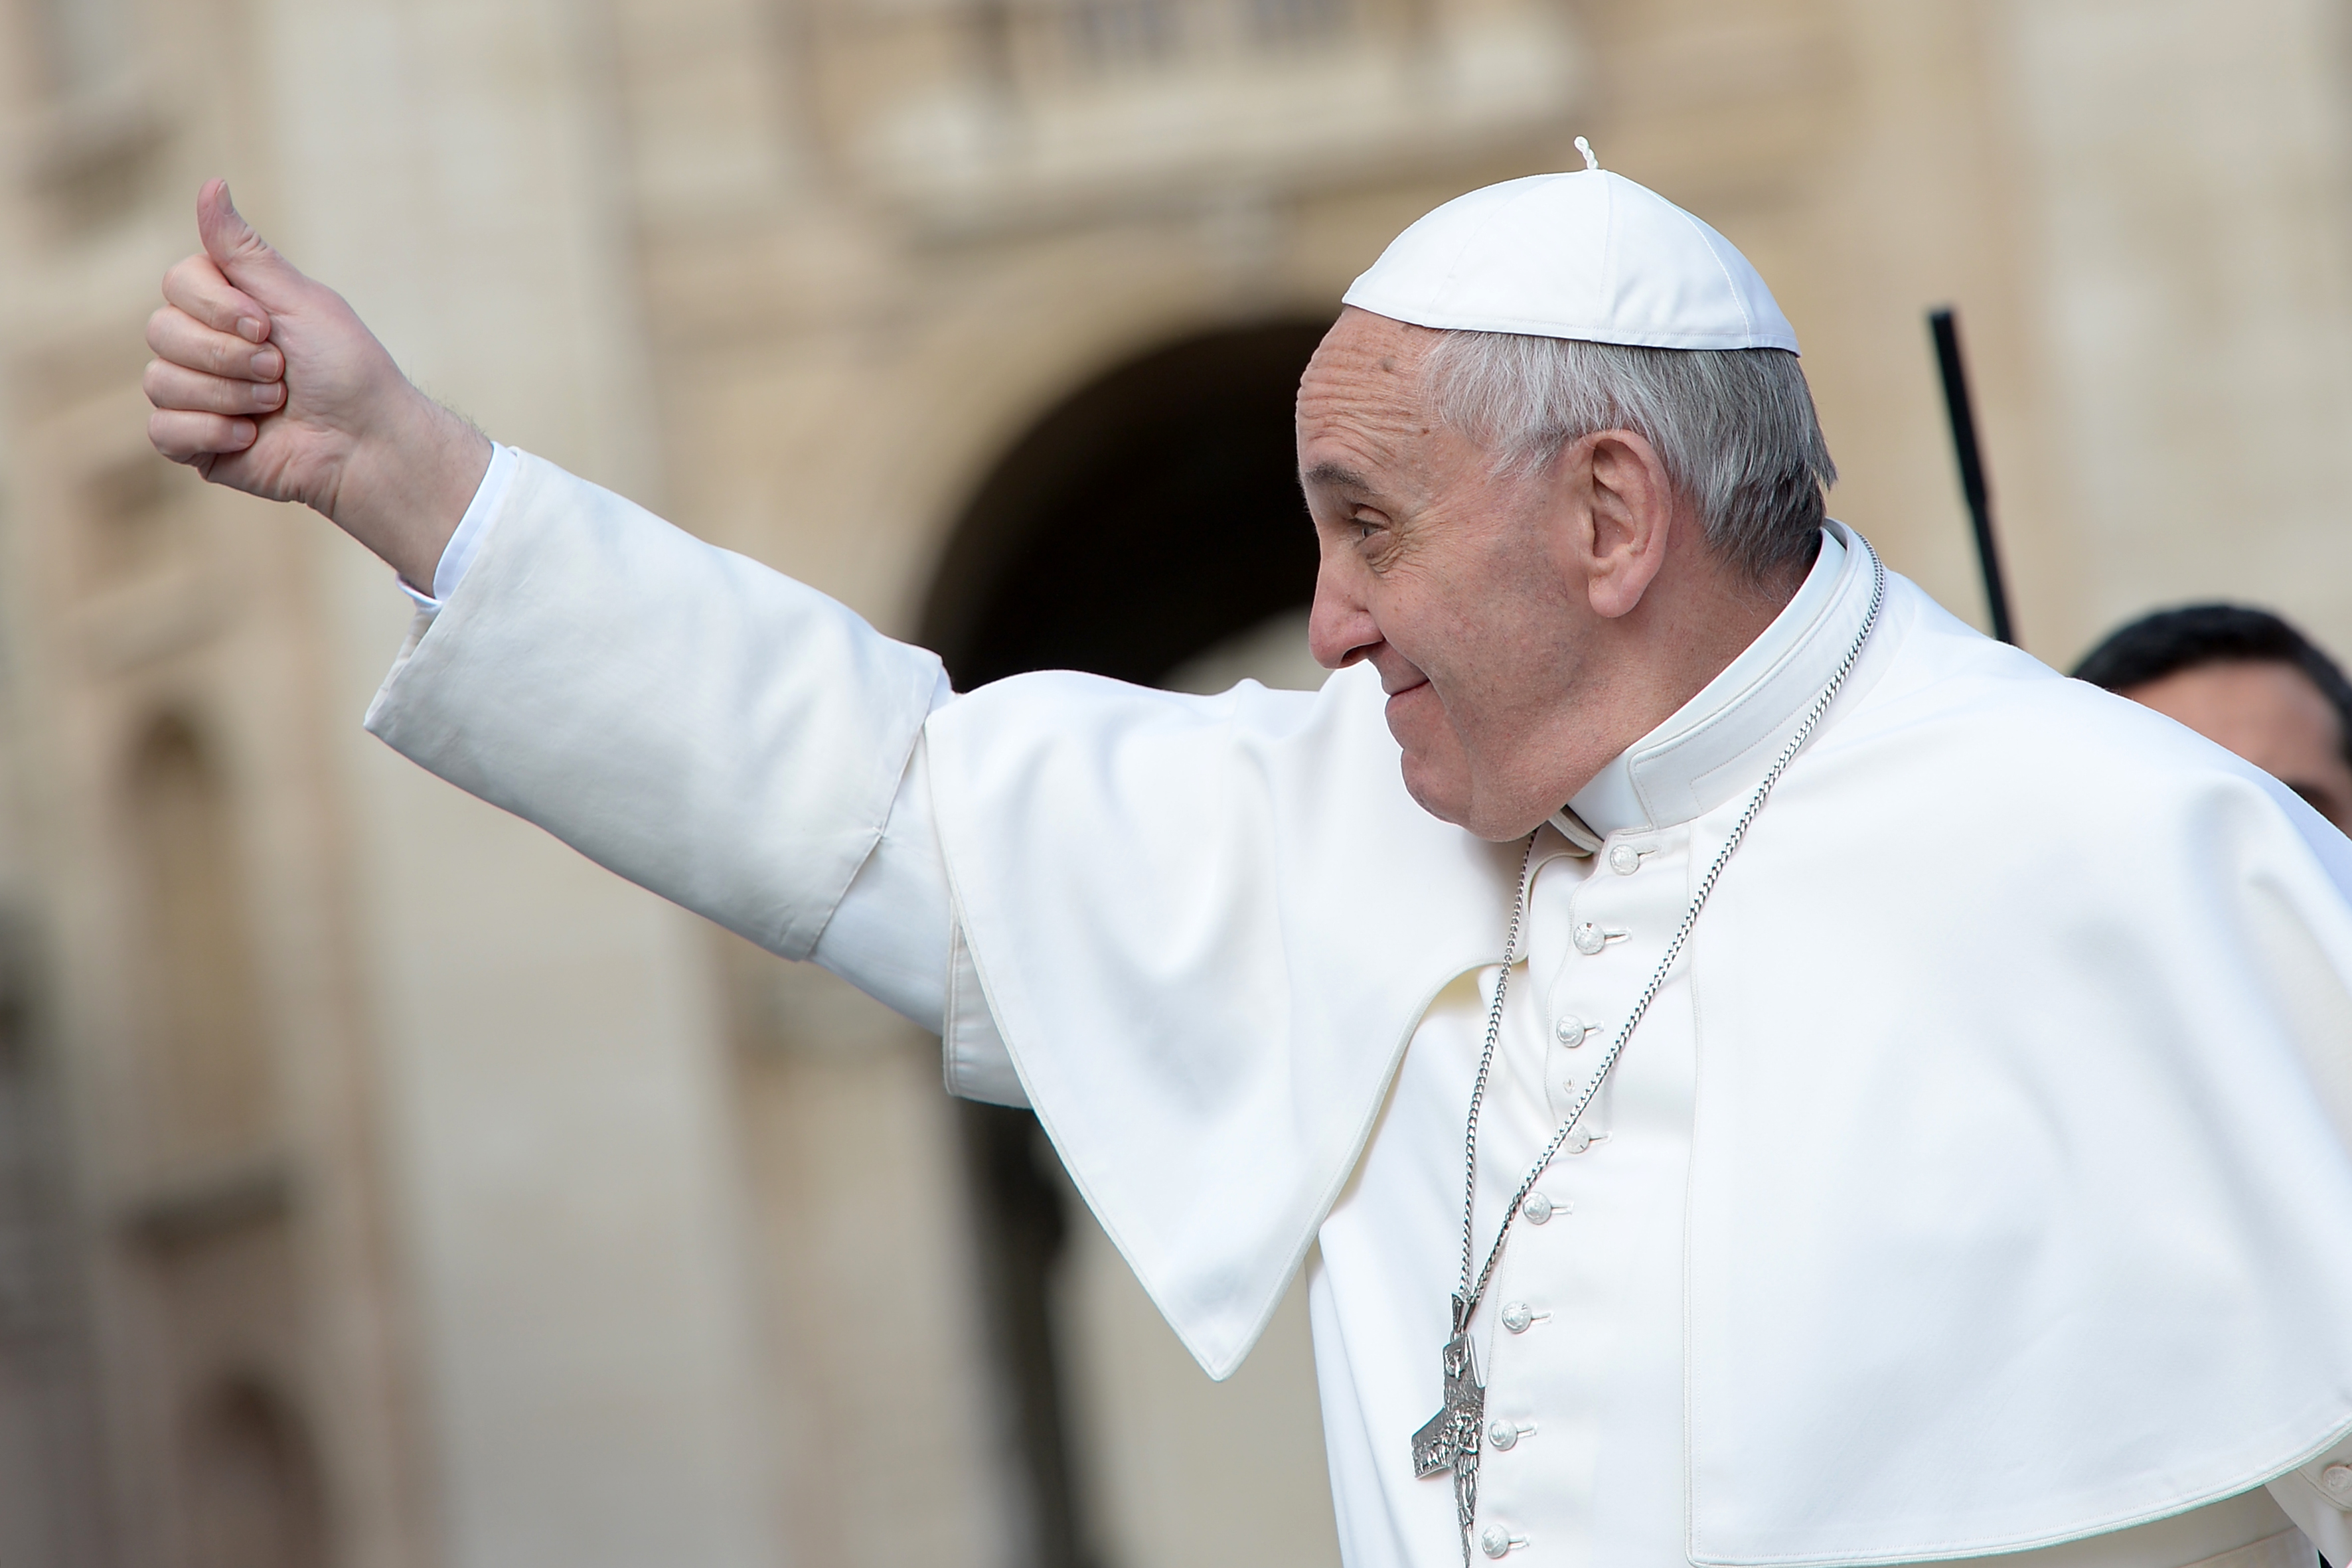  Visita del Papa a Napoli, De Magistris: “trasporto pubblico gratis tutto il giorno”